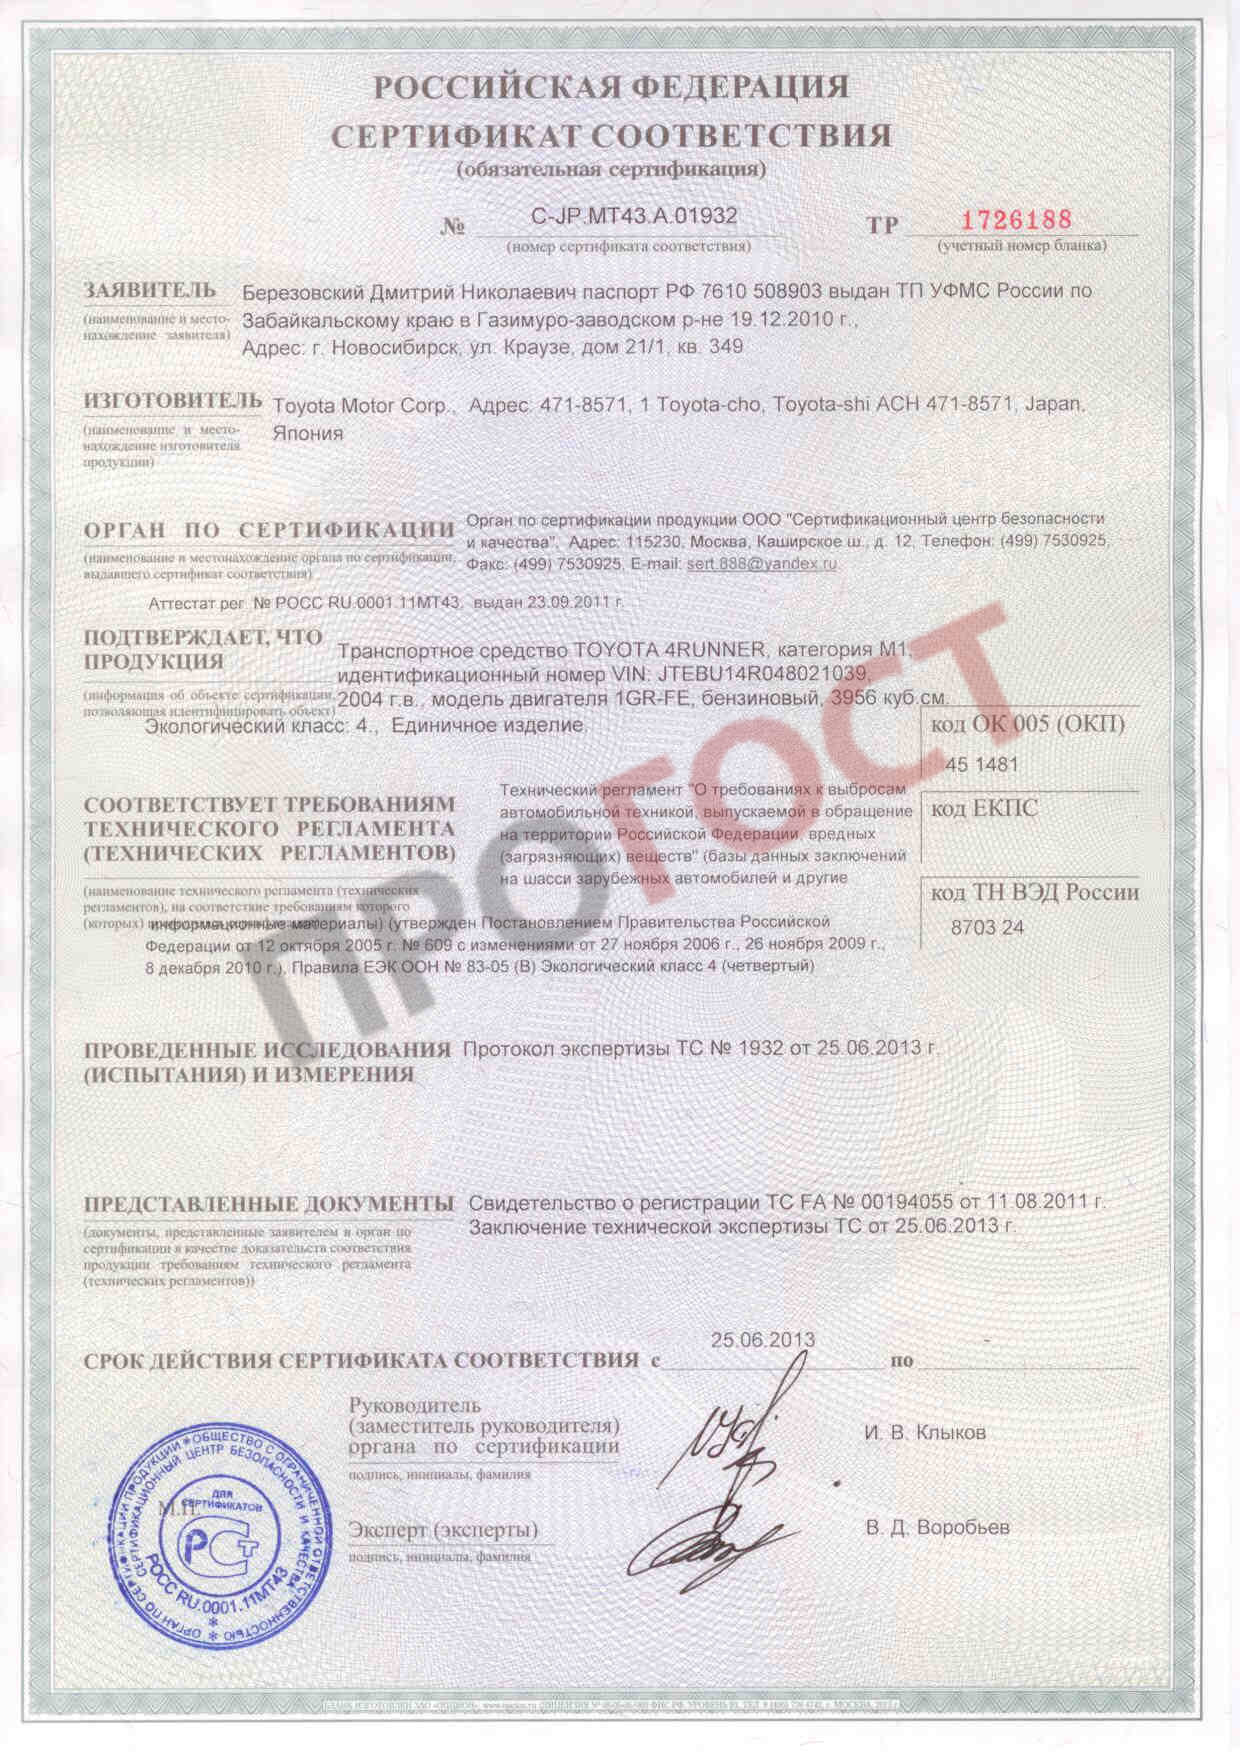 Сертификат ЕВРО